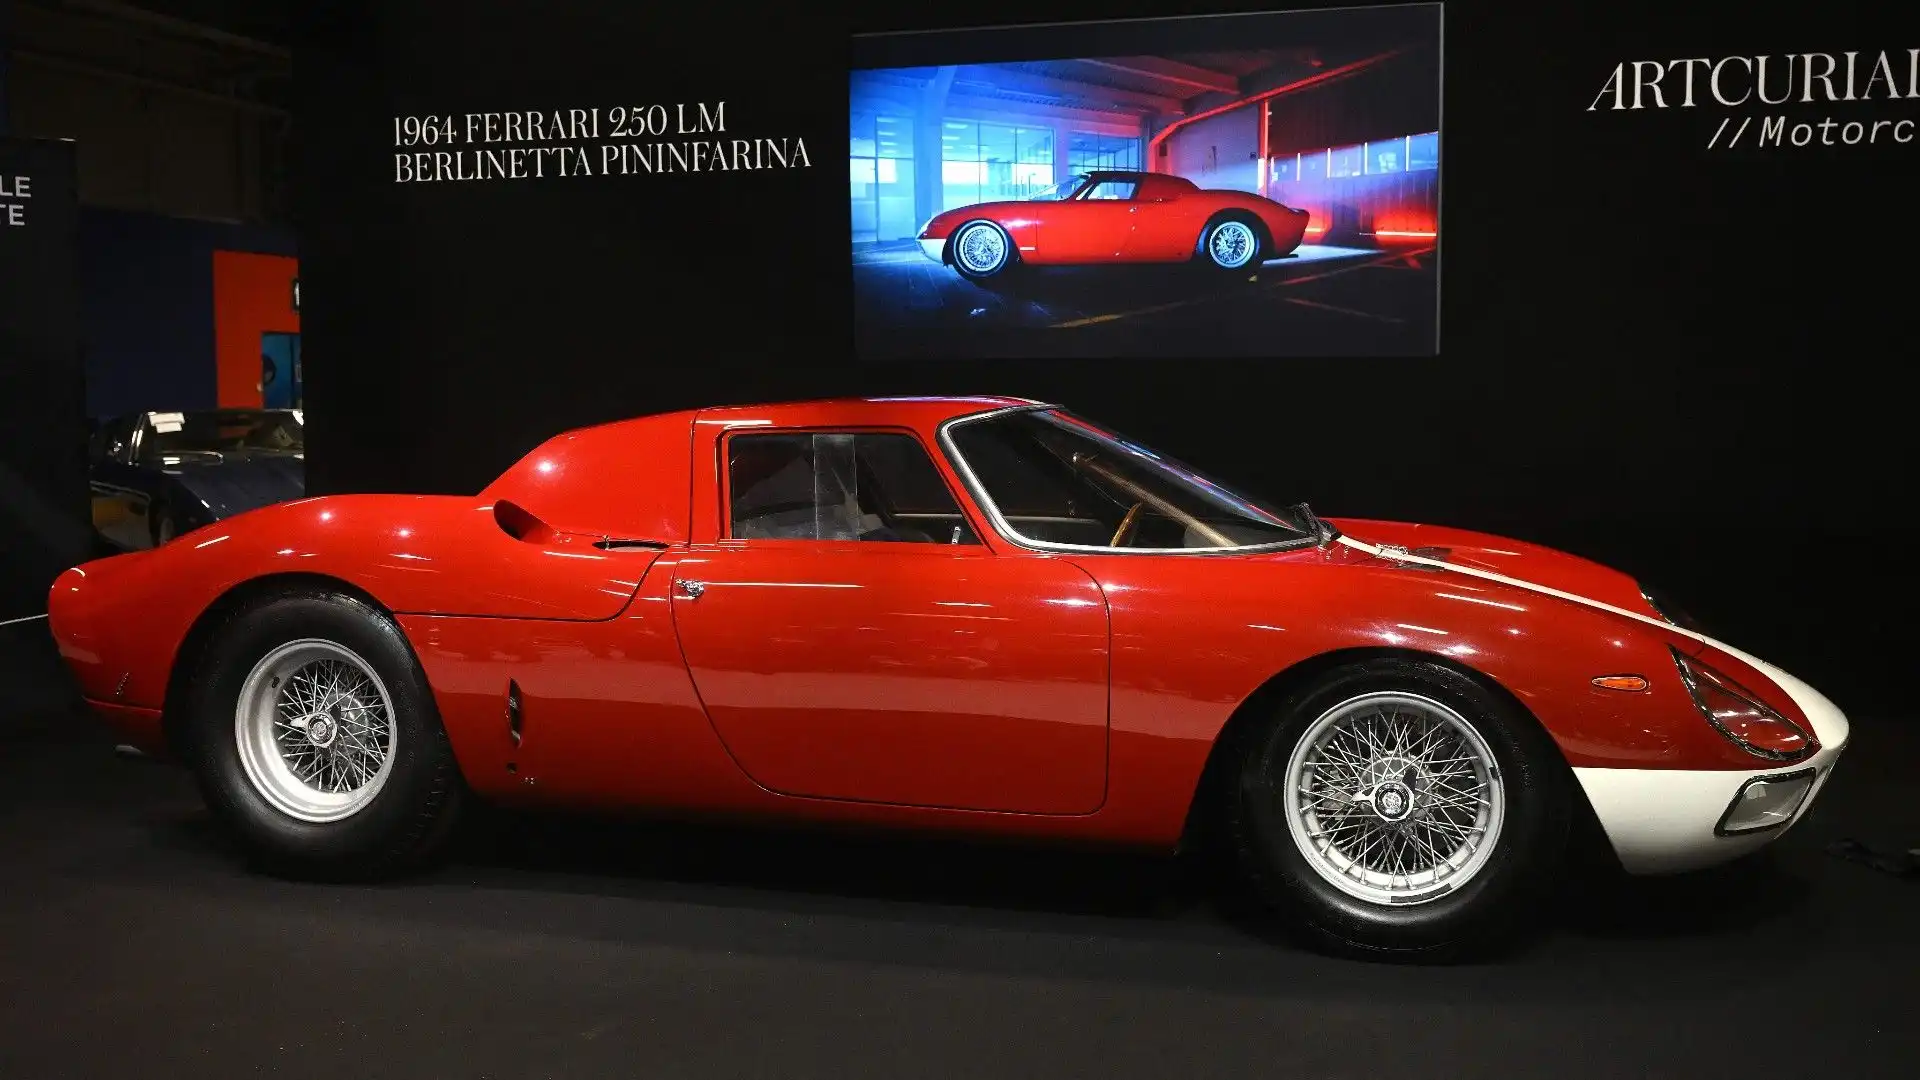 Presentata al Salone di Parigi nell'ottobre 1963, è un'auto davvero stupenda